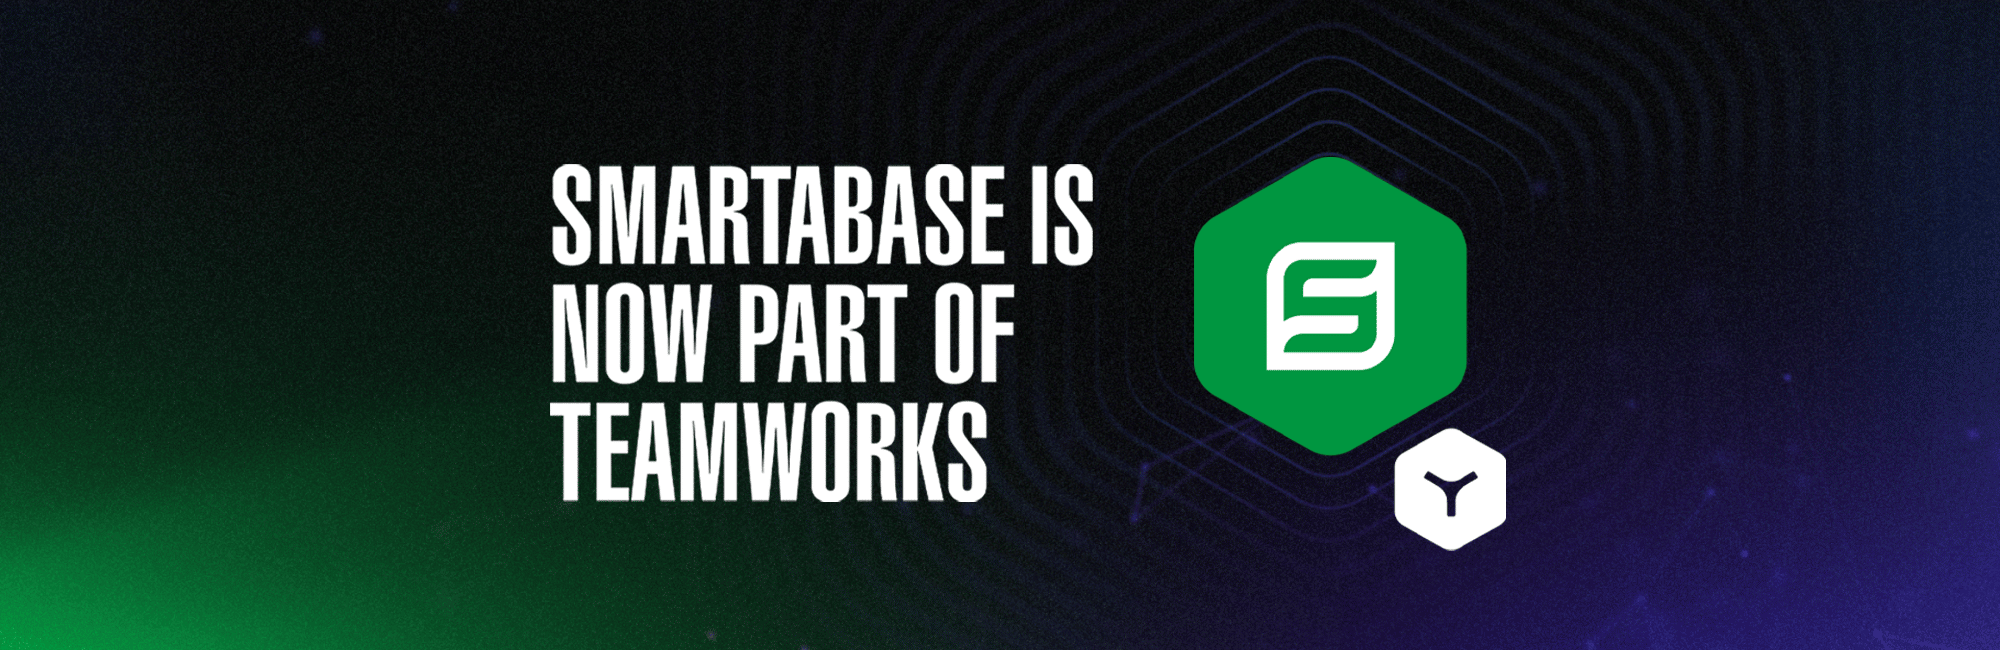 Teamworks Acquires Smartabase